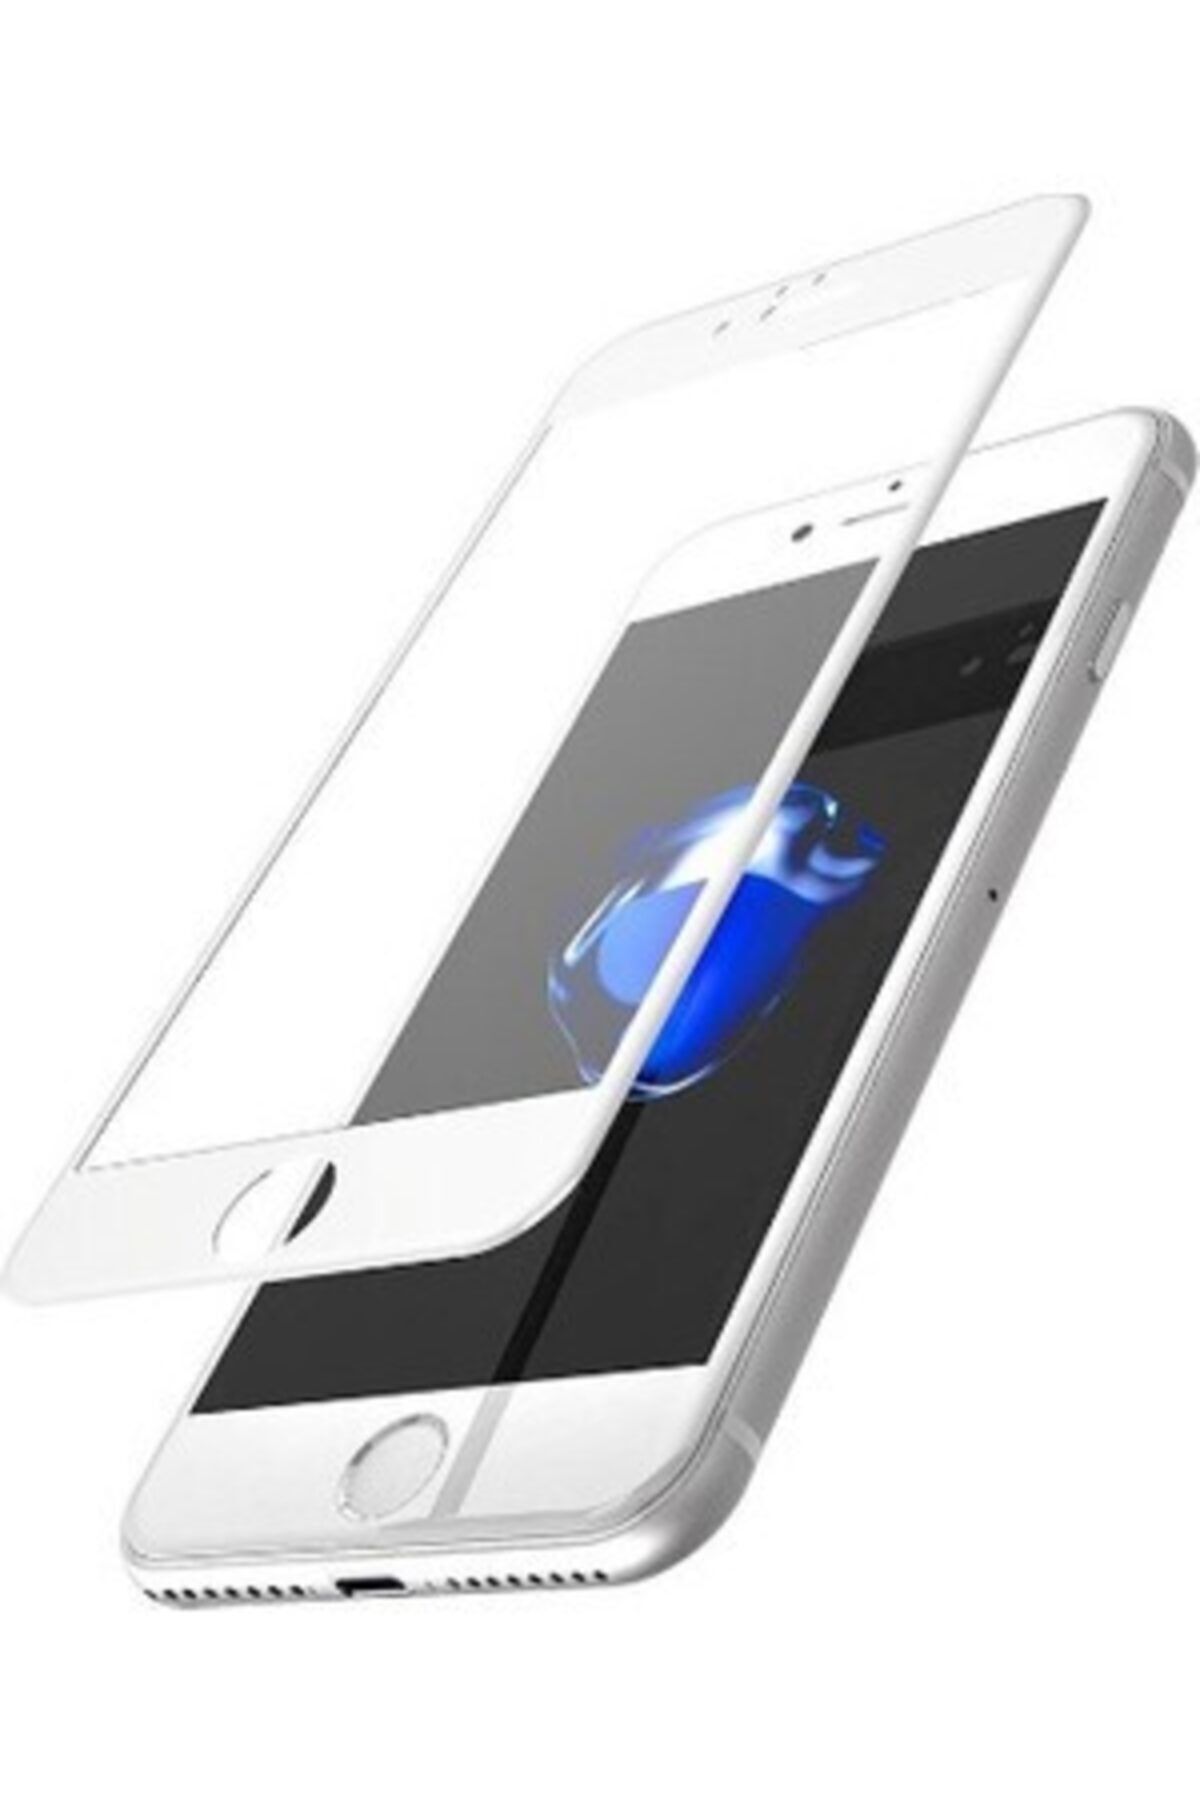 Go Aksesuar Iphone 6-6s-7 -8 Beyaz Renk Tam Kaplayan Kırılmaz Cam Ekran Koruyucu